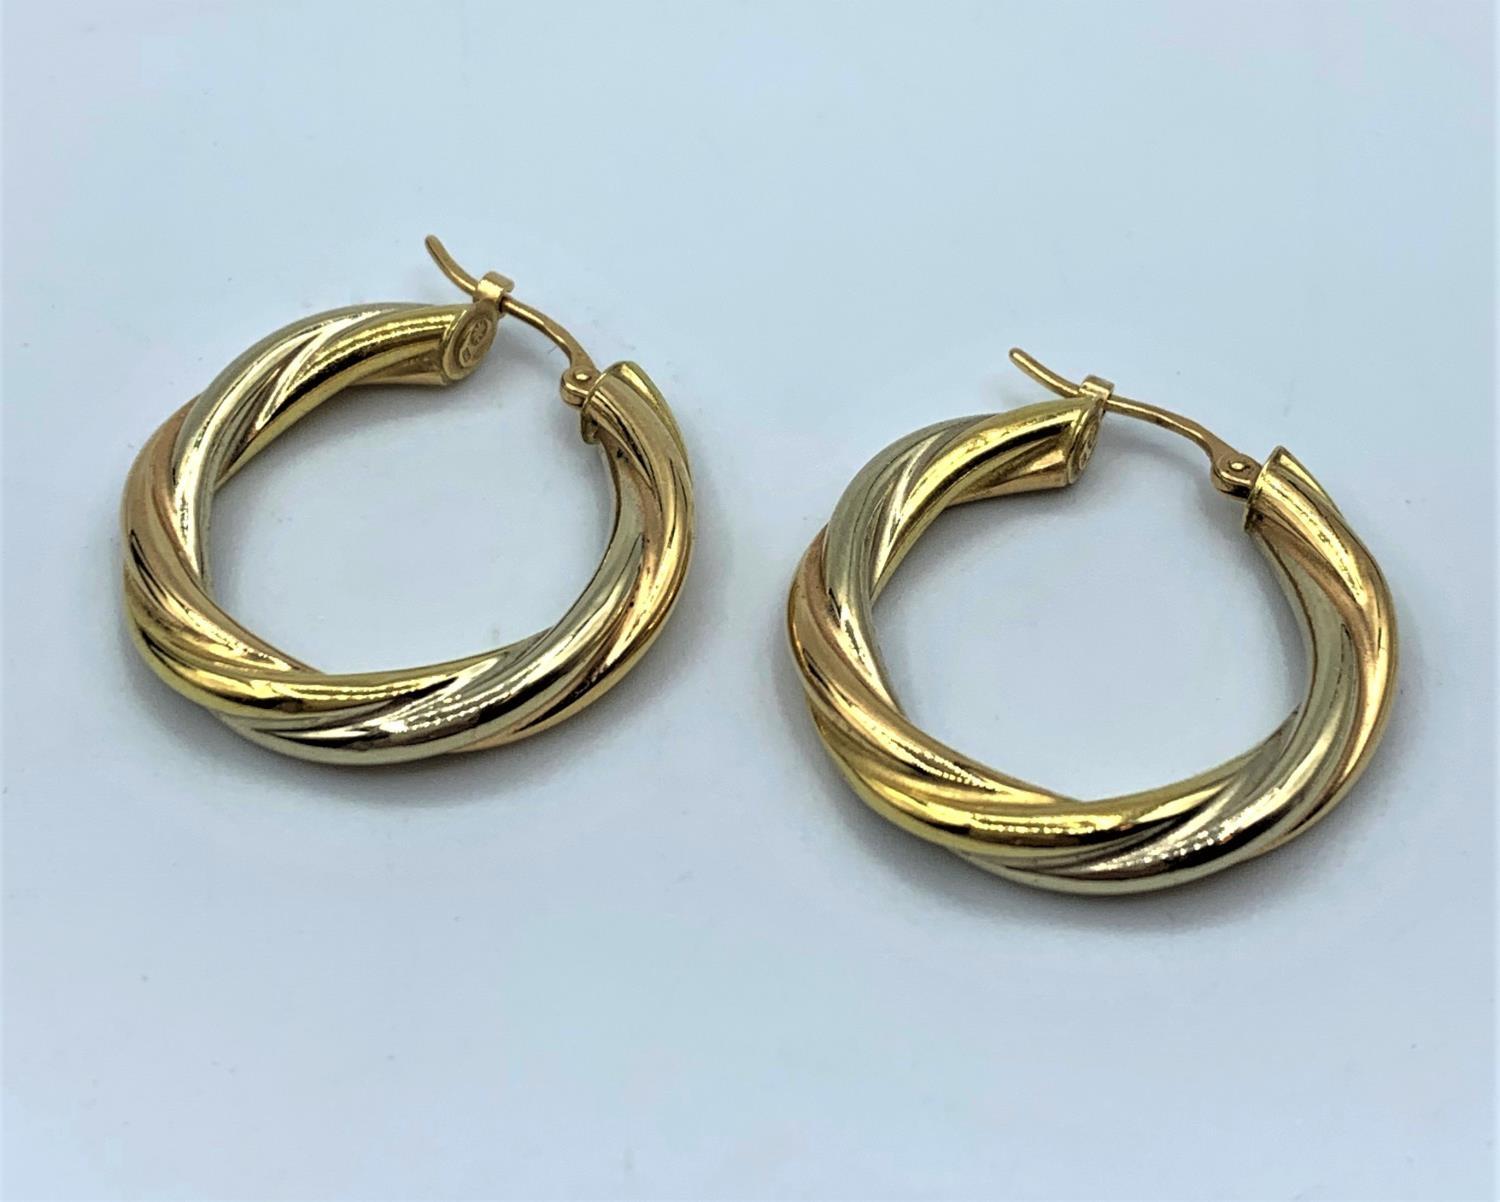 Pair of 18ct Twist Hoop Earrings, weight 2.4g